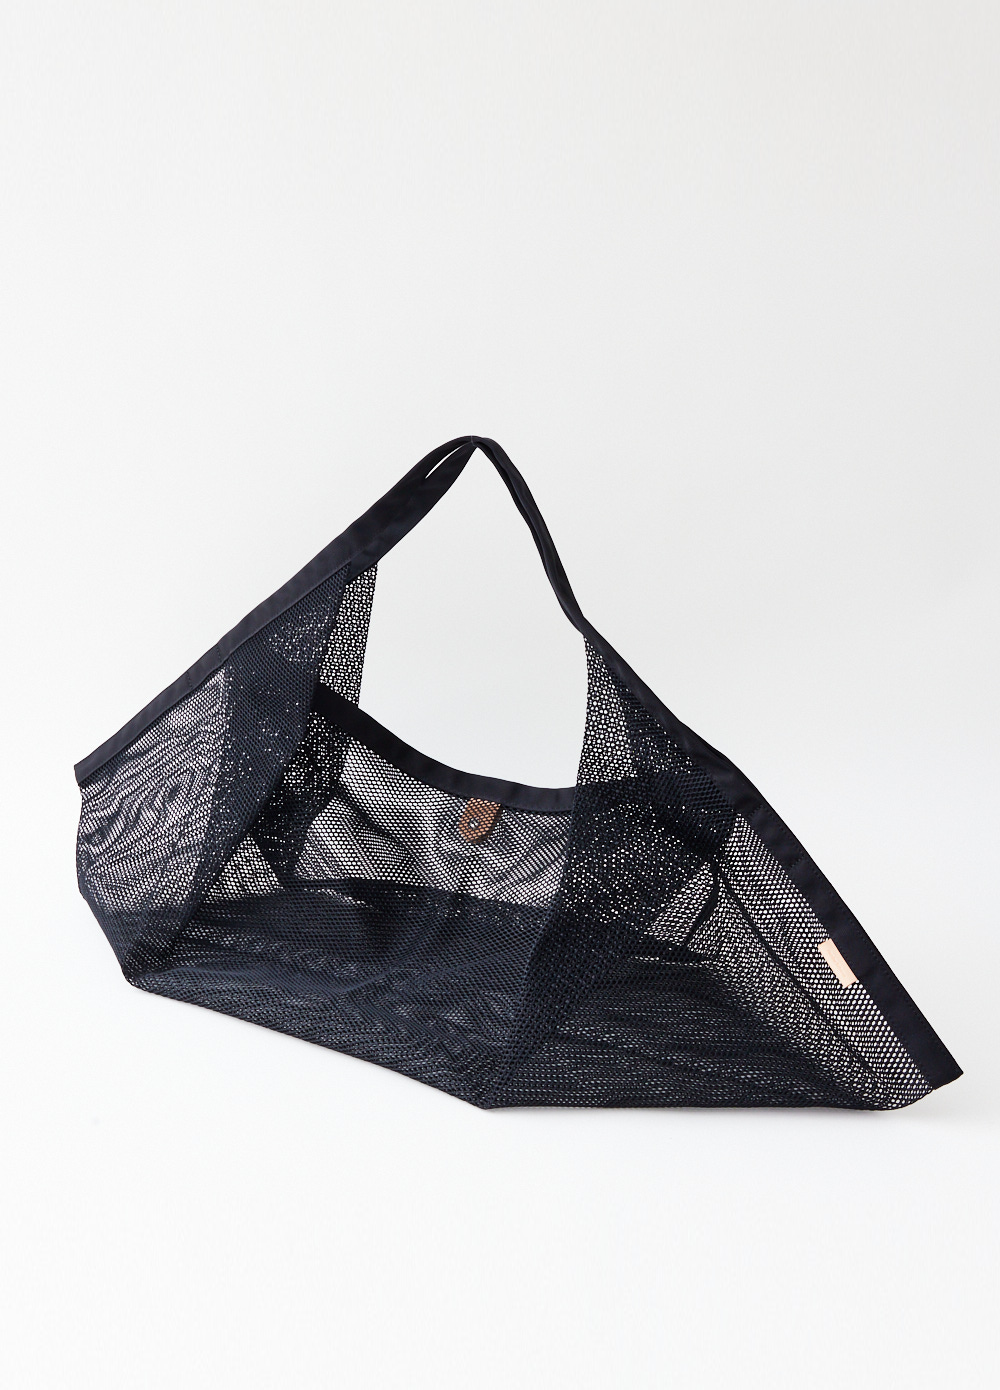 Big Origami Mesh Bag